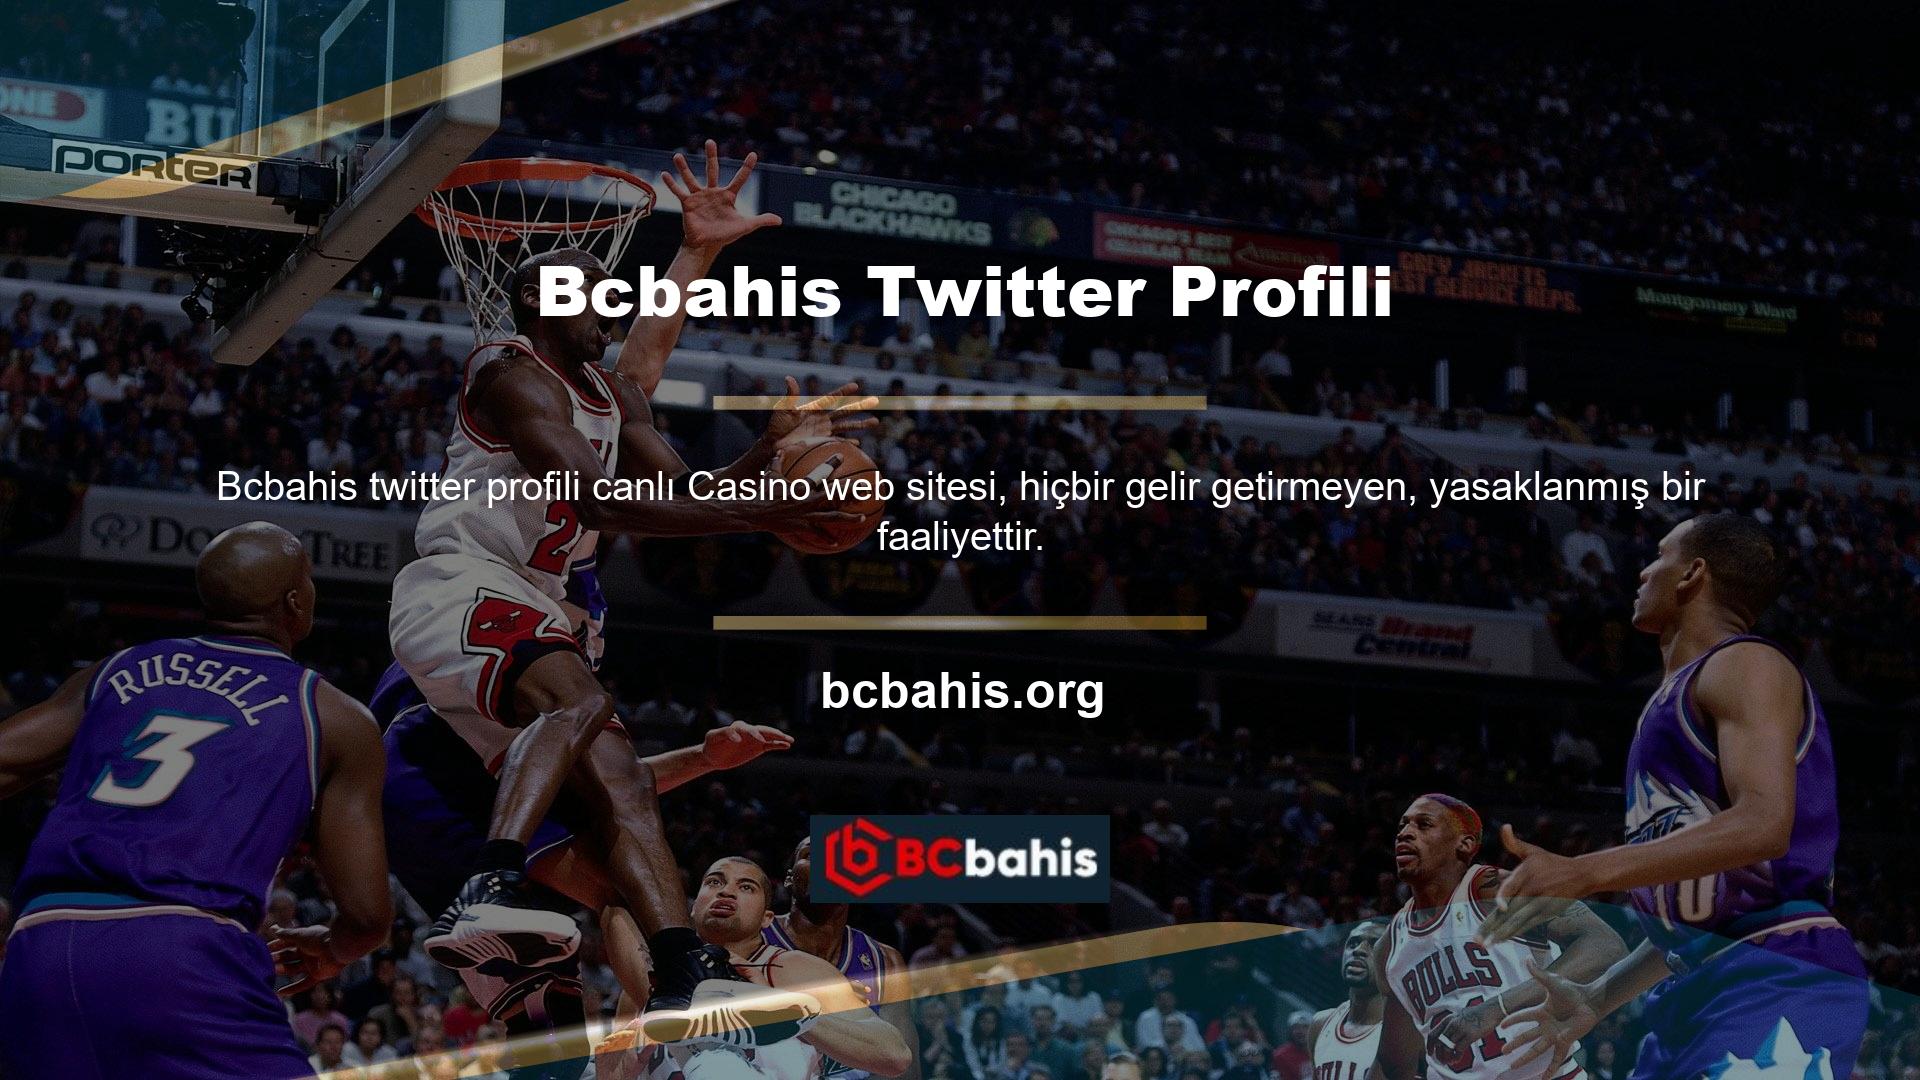 Bcbahis Twitter hesabının boyutu nedir? Olumsuzluklar arasında Bcbahis Twitter hesabının şu anda engellenmiş olması yer alıyor